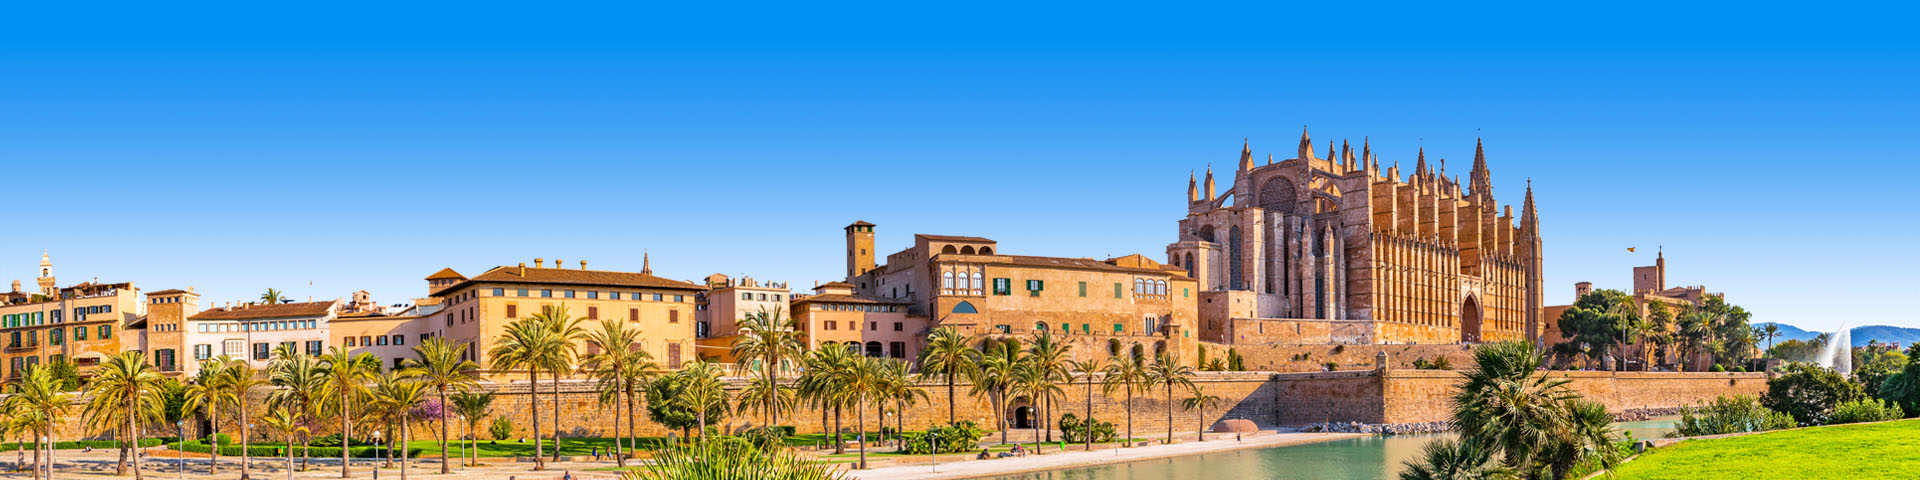 Uitzicht op de kathedraal in Palma tijdens een korte vakantie